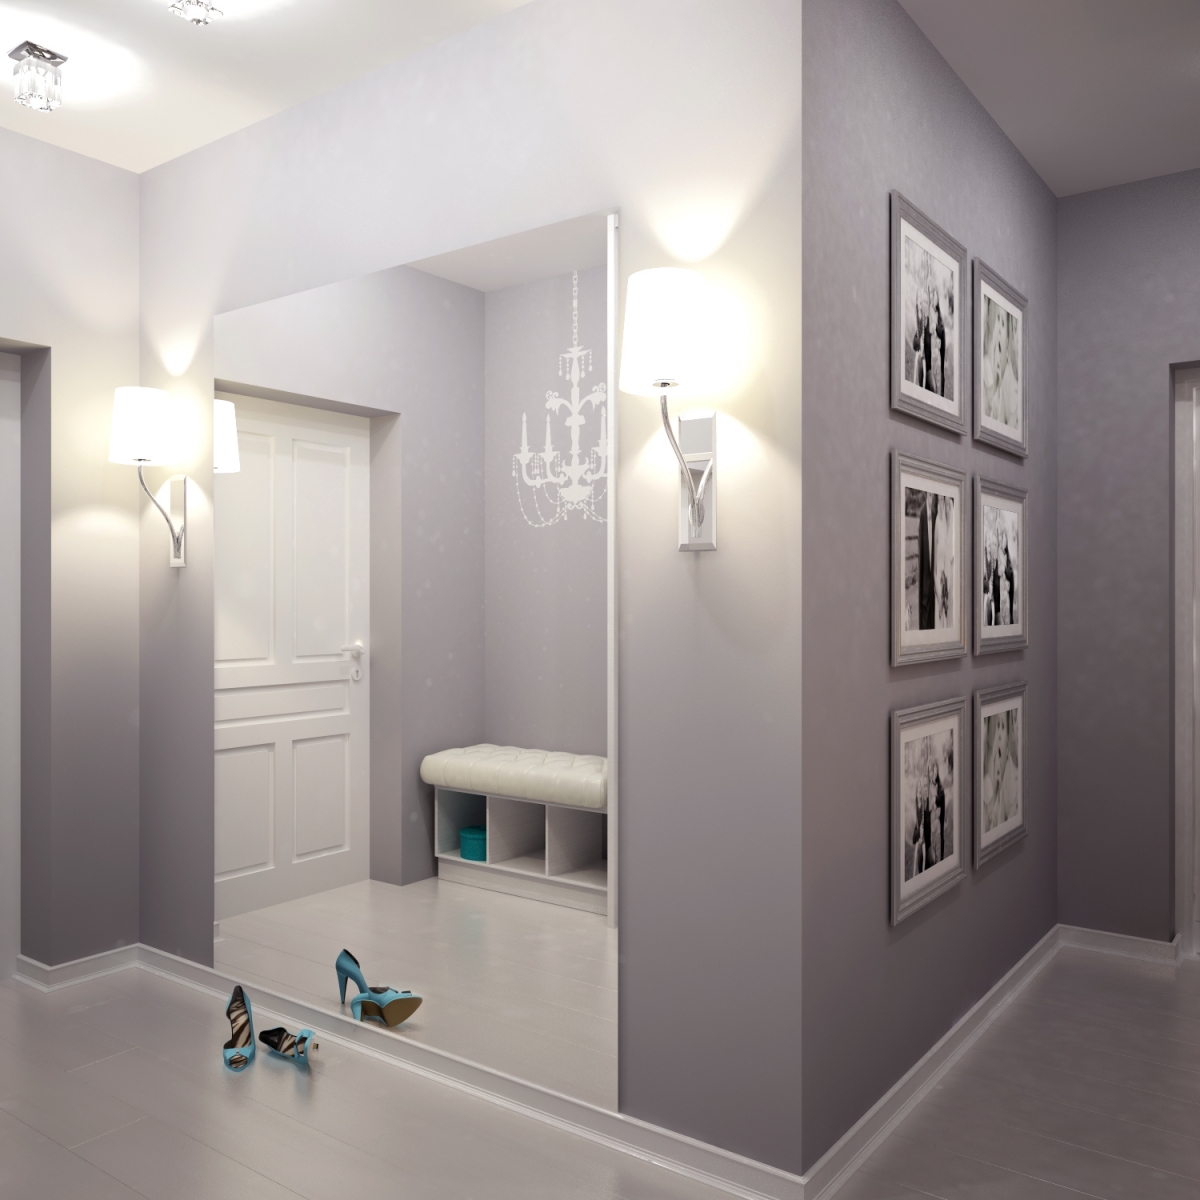 коридор дизайн интерьера в квартире с мебелью